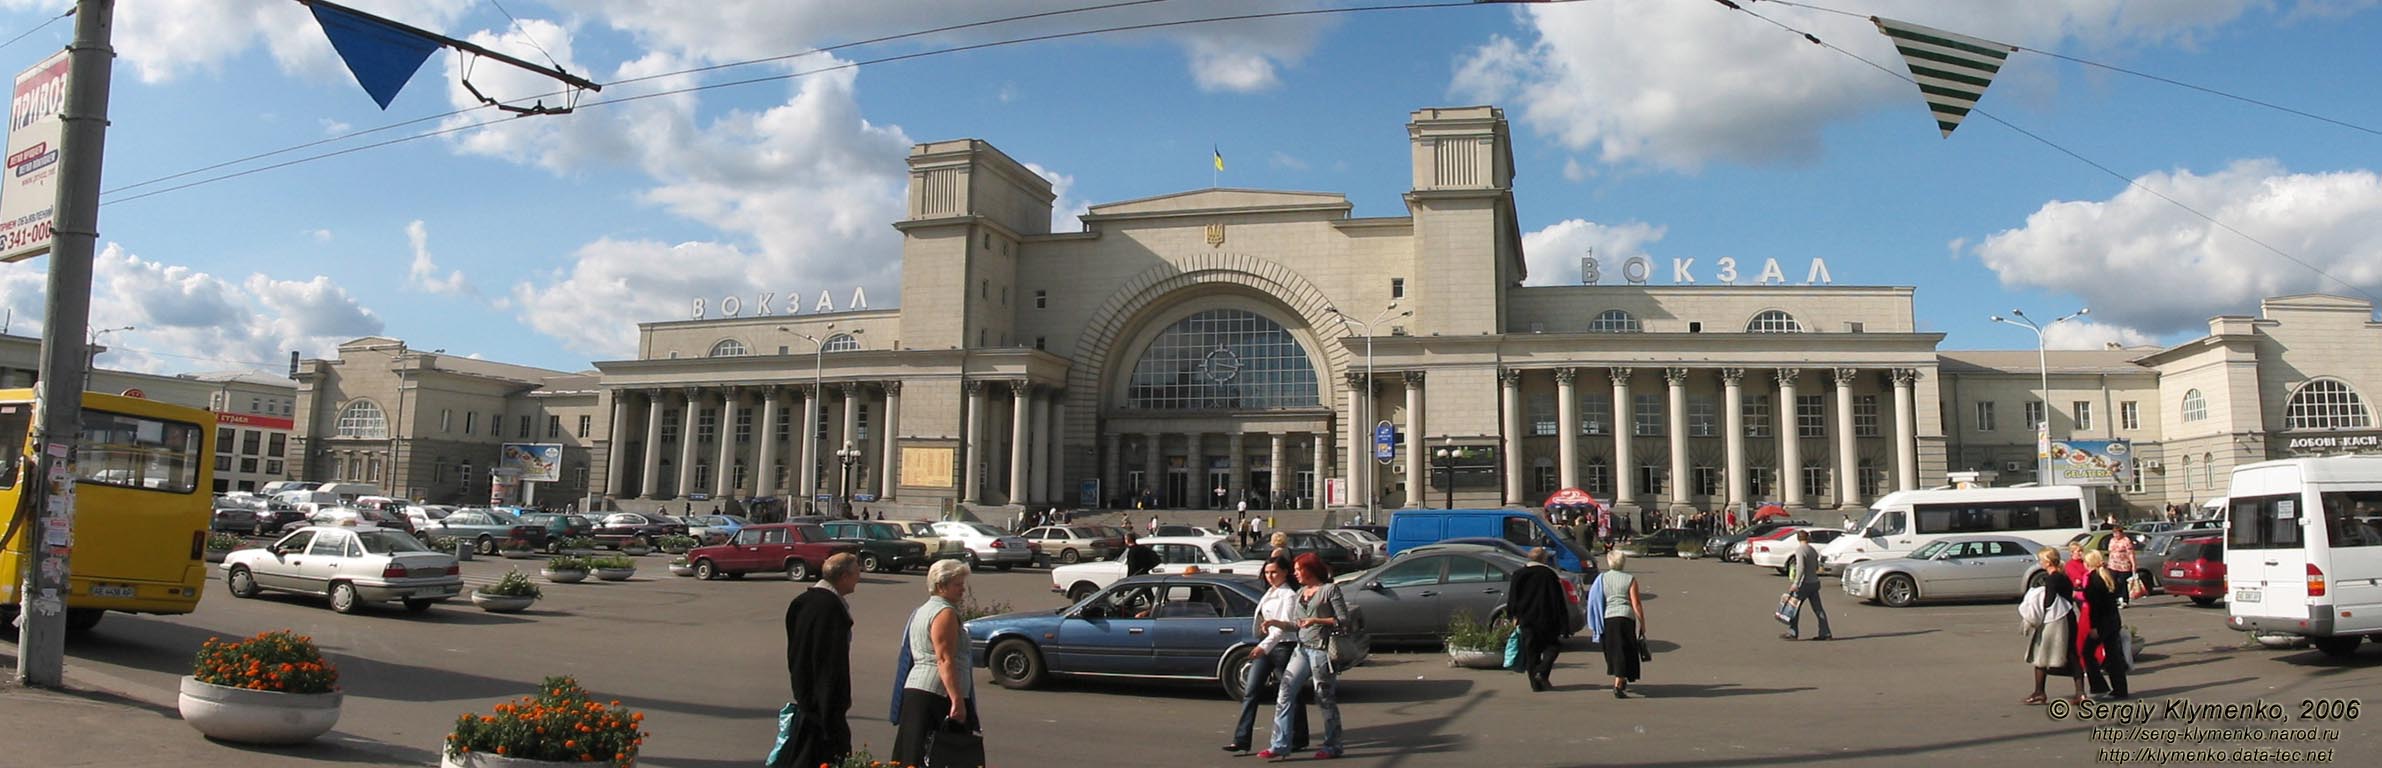 Днепропетровск, железнодорожный вокзал